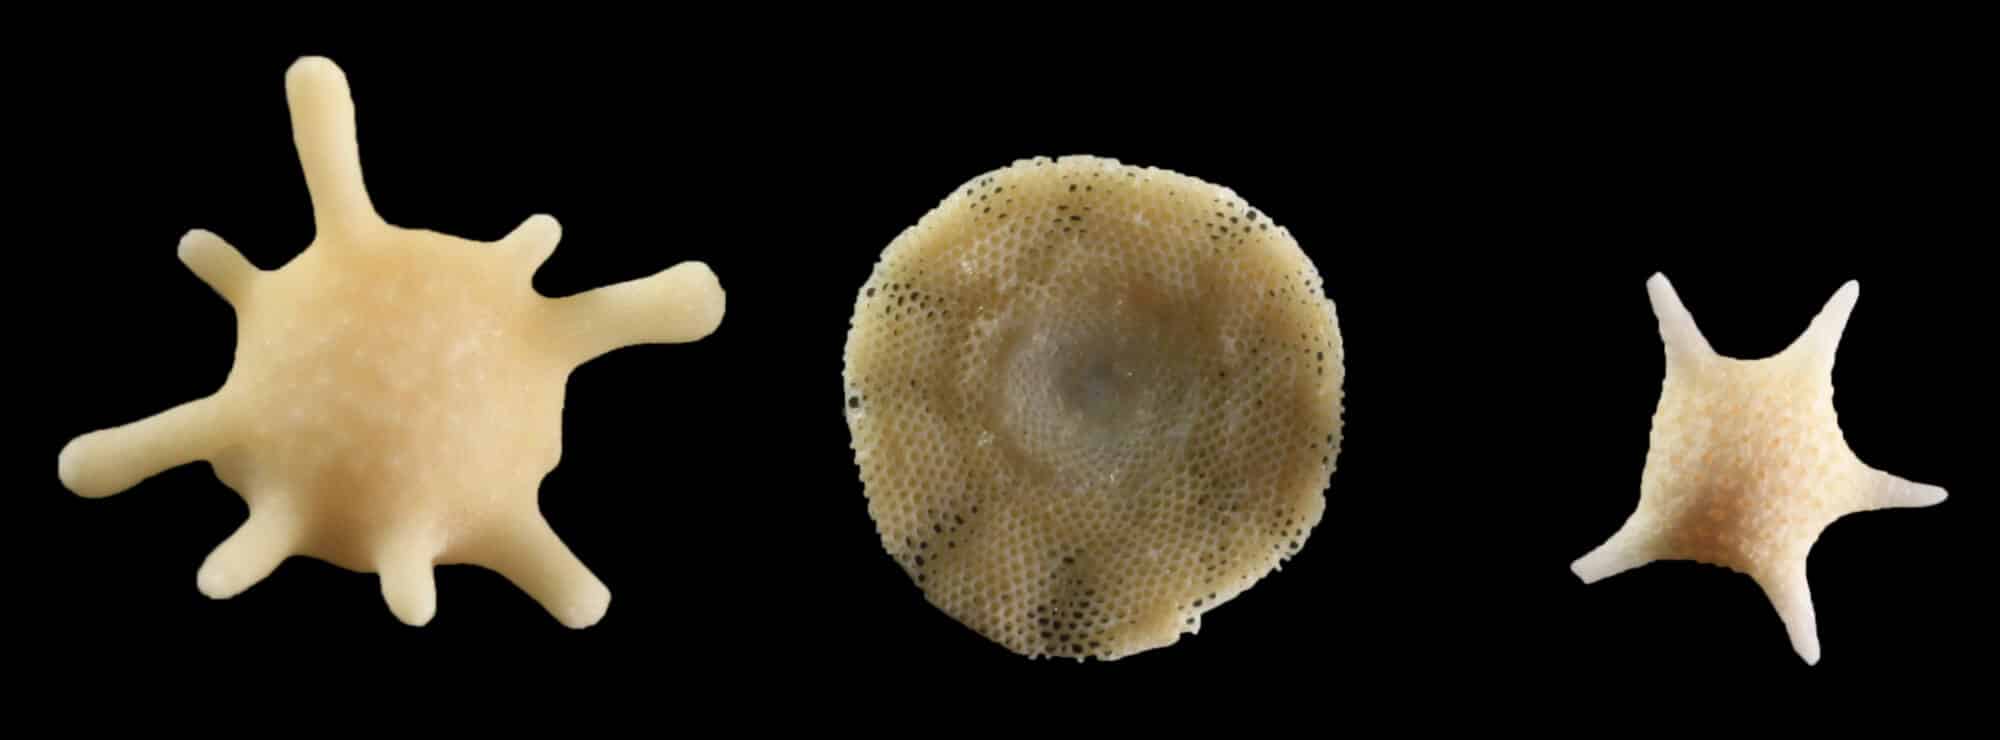 מינים שונים של פורמיניפרה.  <a href="https://depositphotos.com. ">המחשה: depositphotos.com</a>
